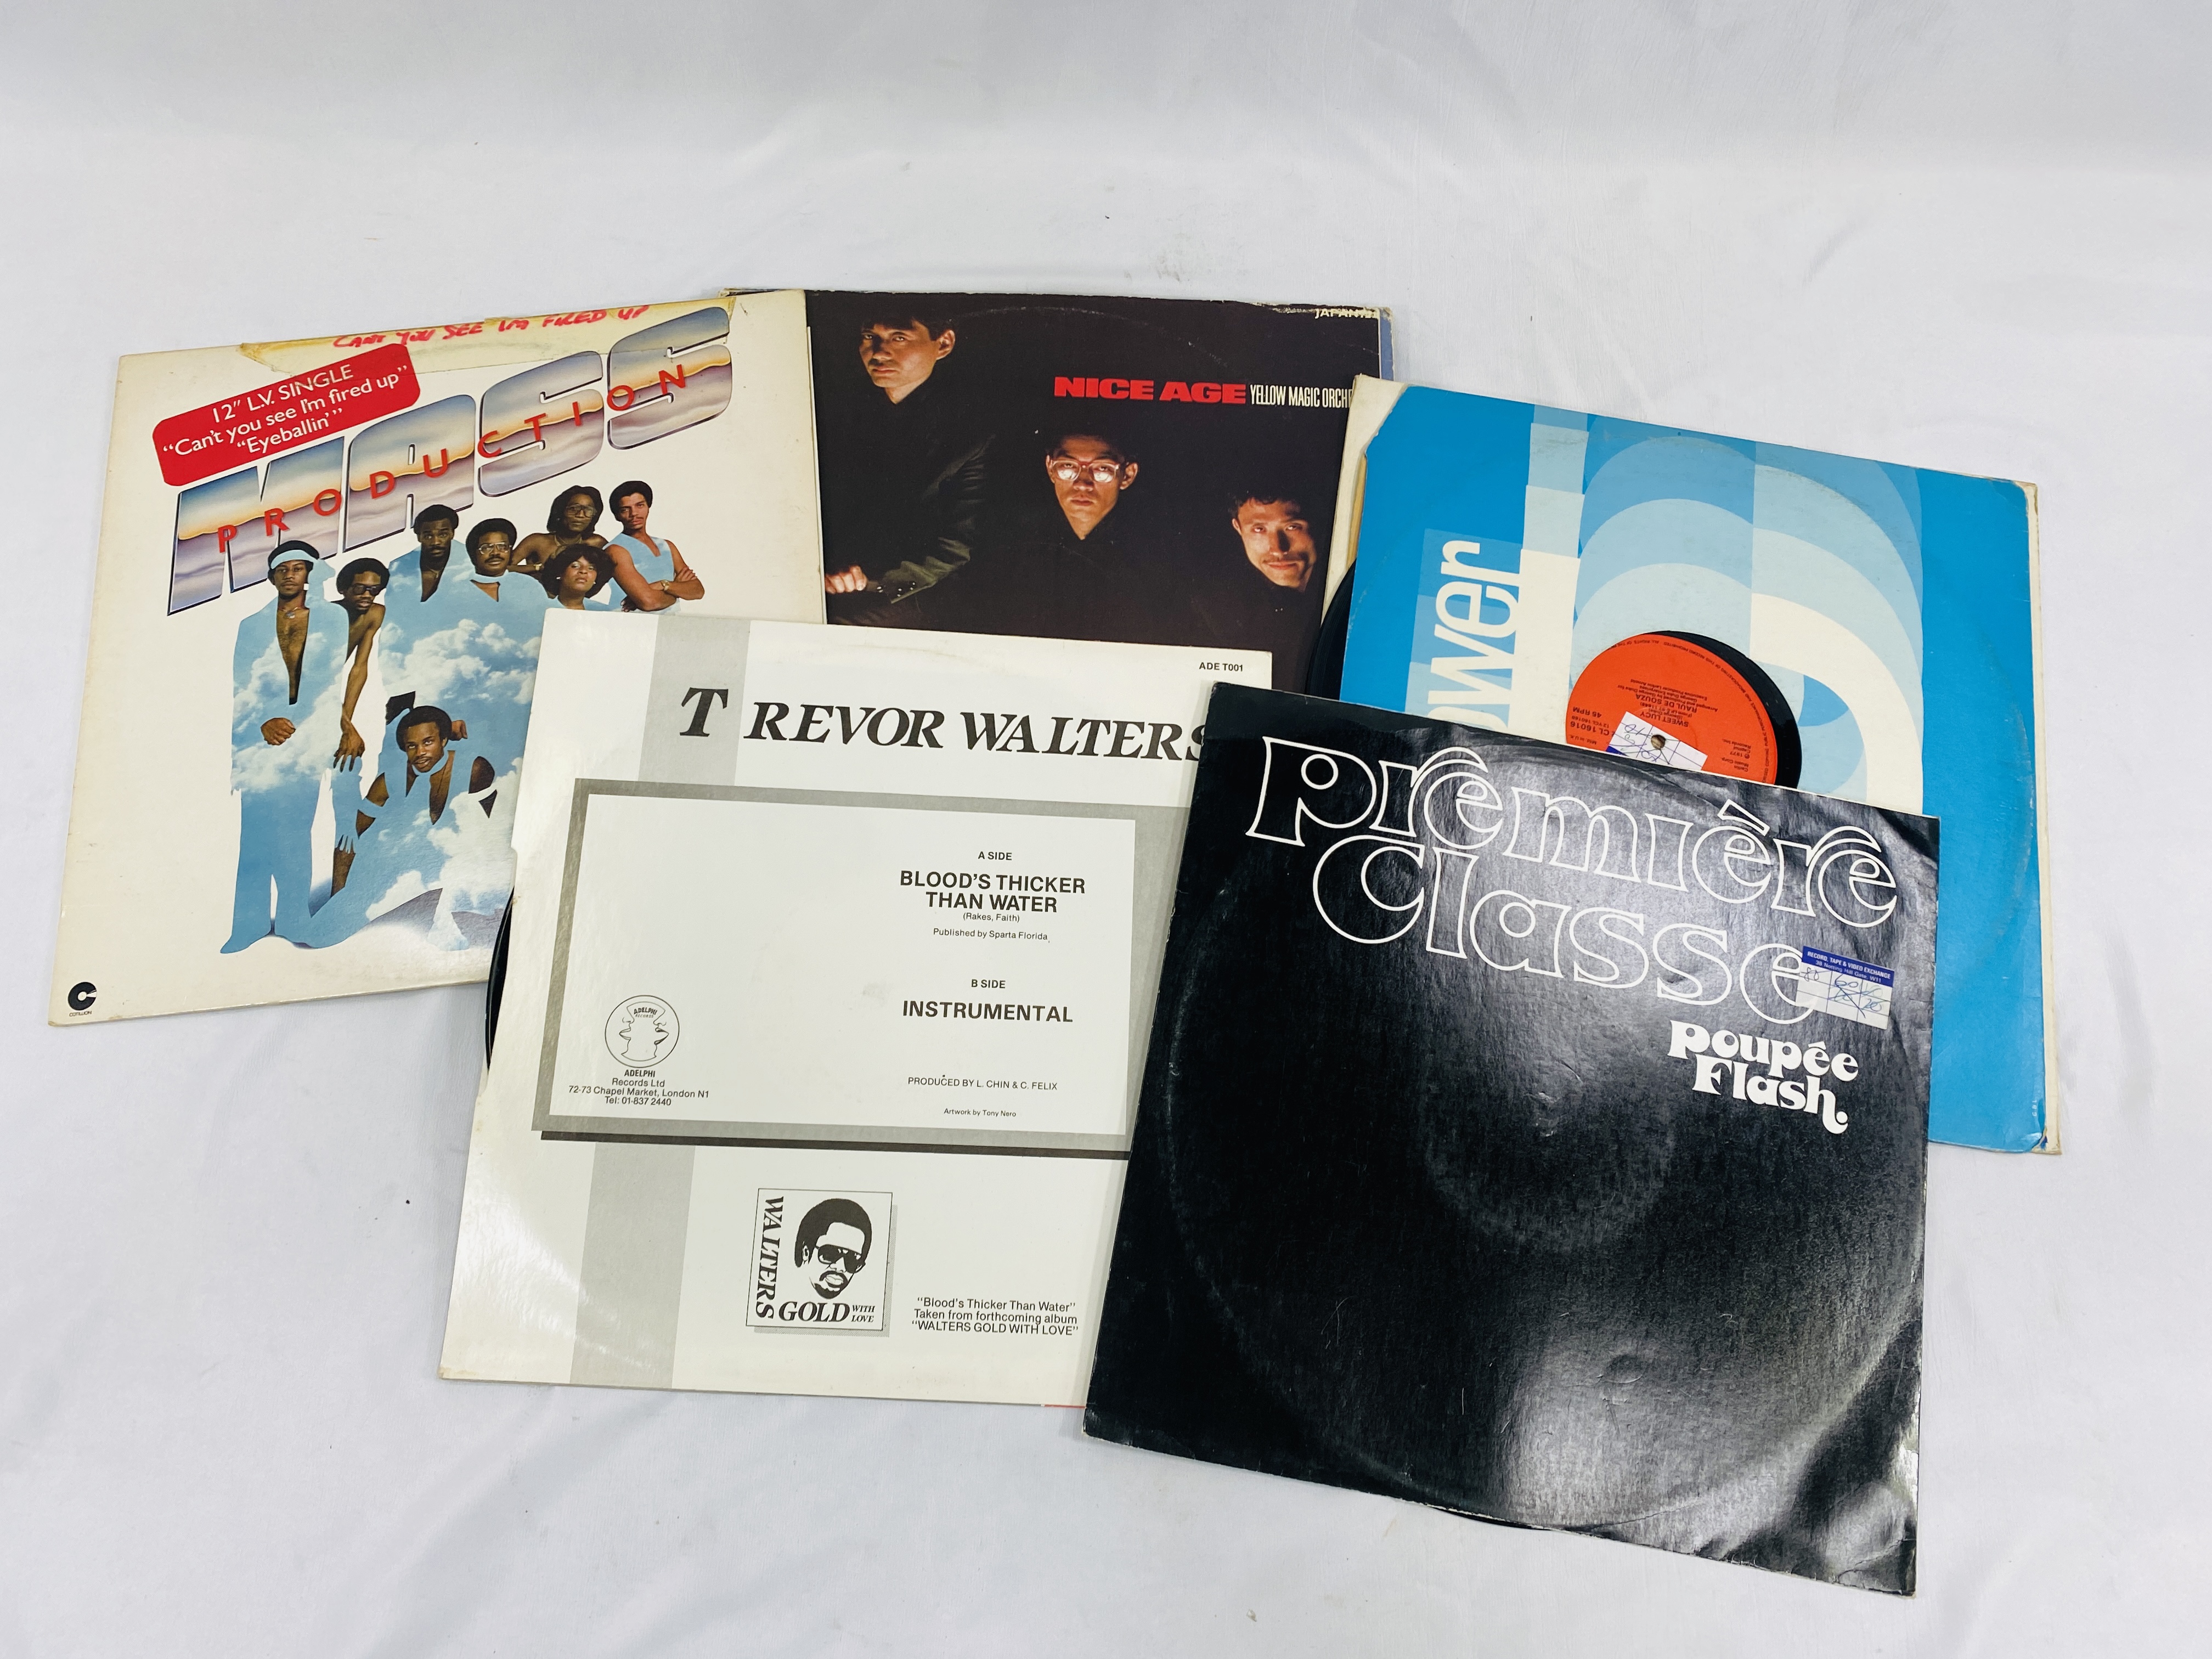 A quantity of vinyl records